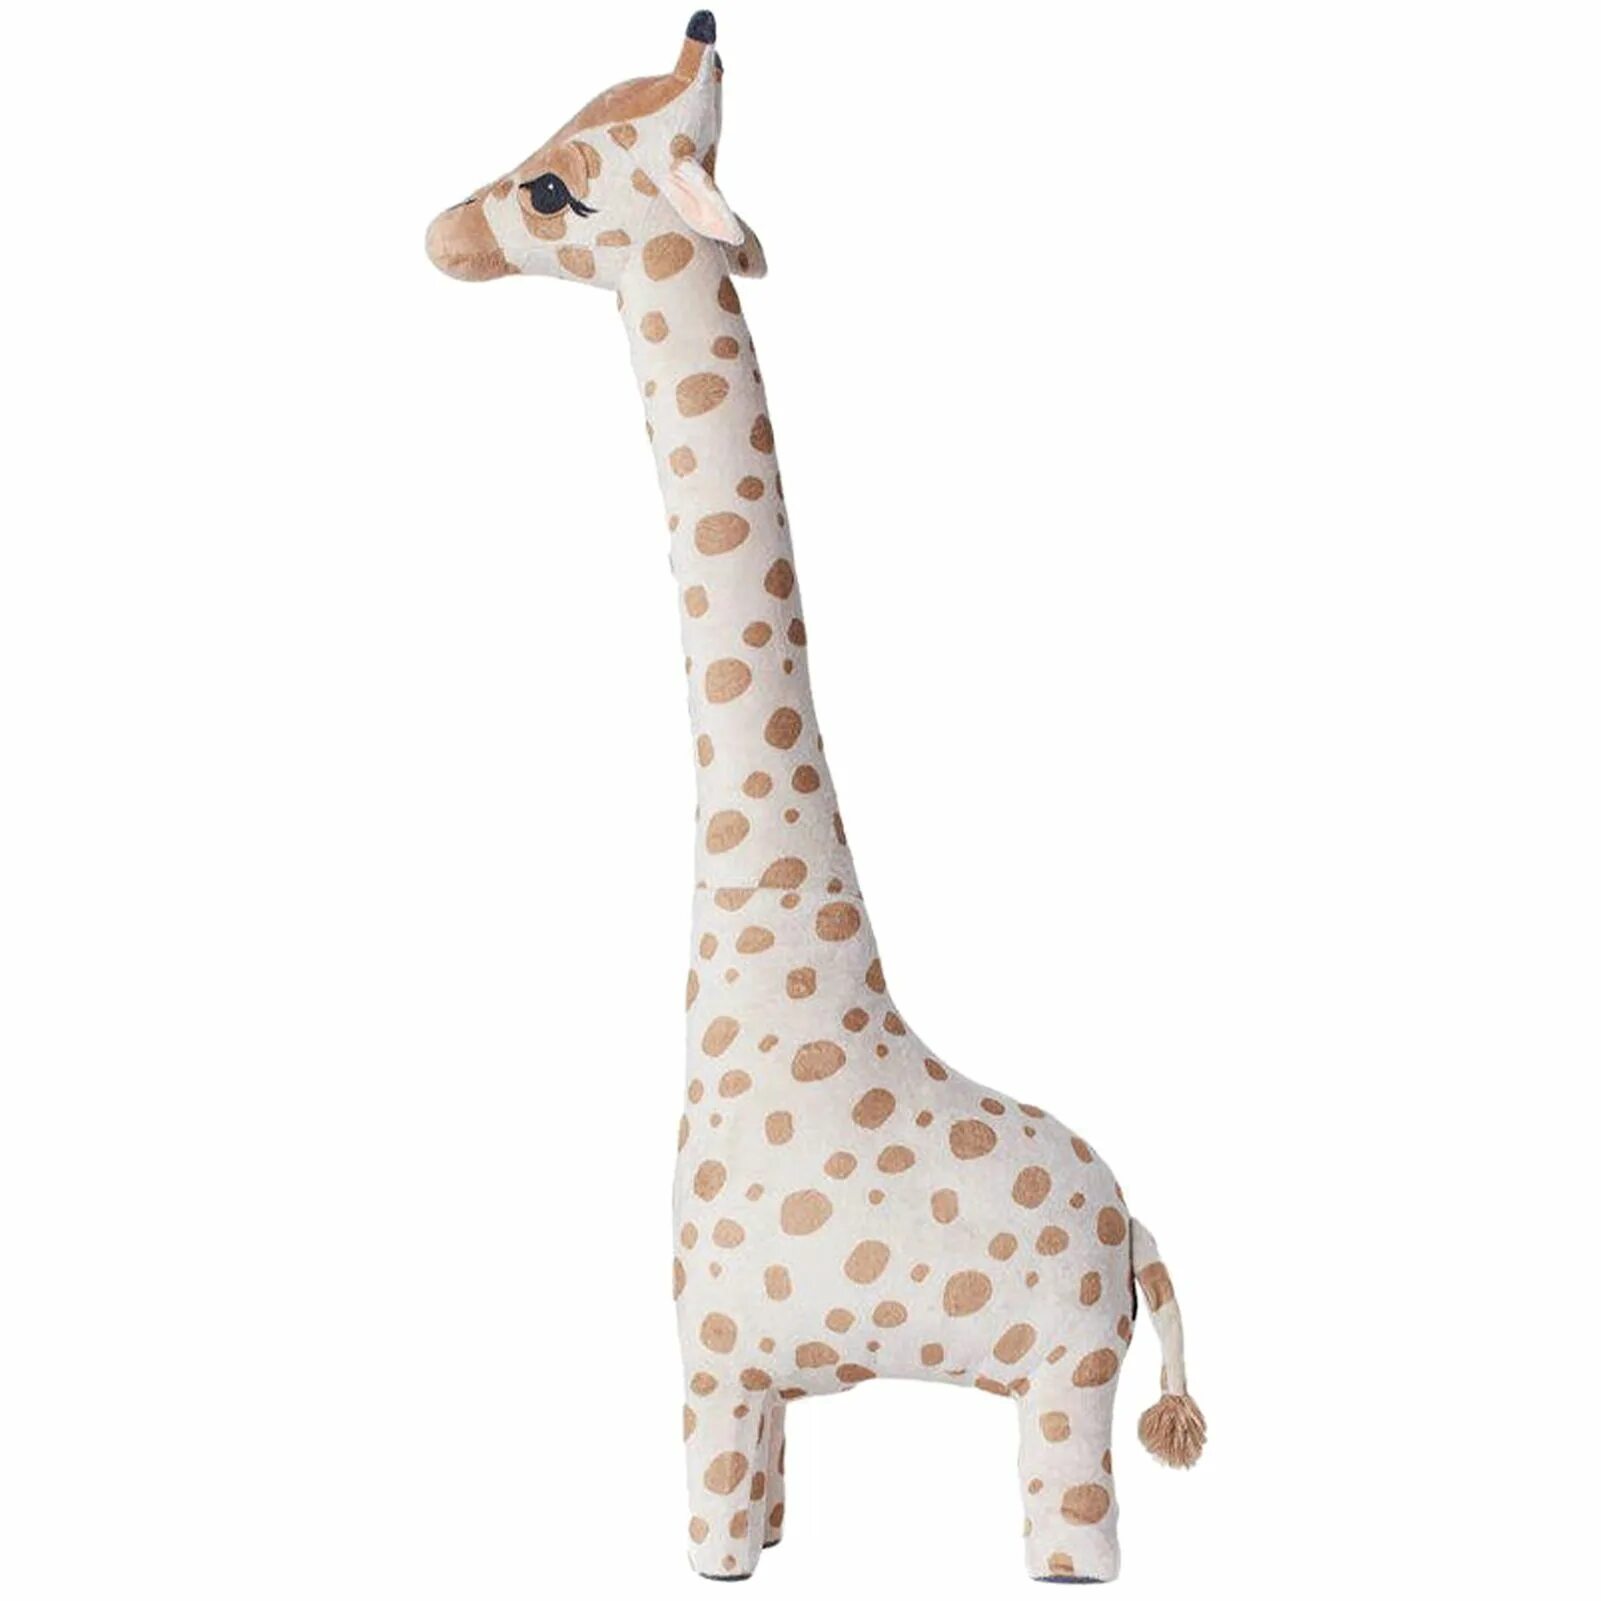 Игрушка Жираф икеа. Мягкая игрушка Жираф большой 140см. Жираф HM игрушка. HM Home Жираф игрушка. Купить жирафа игрушку